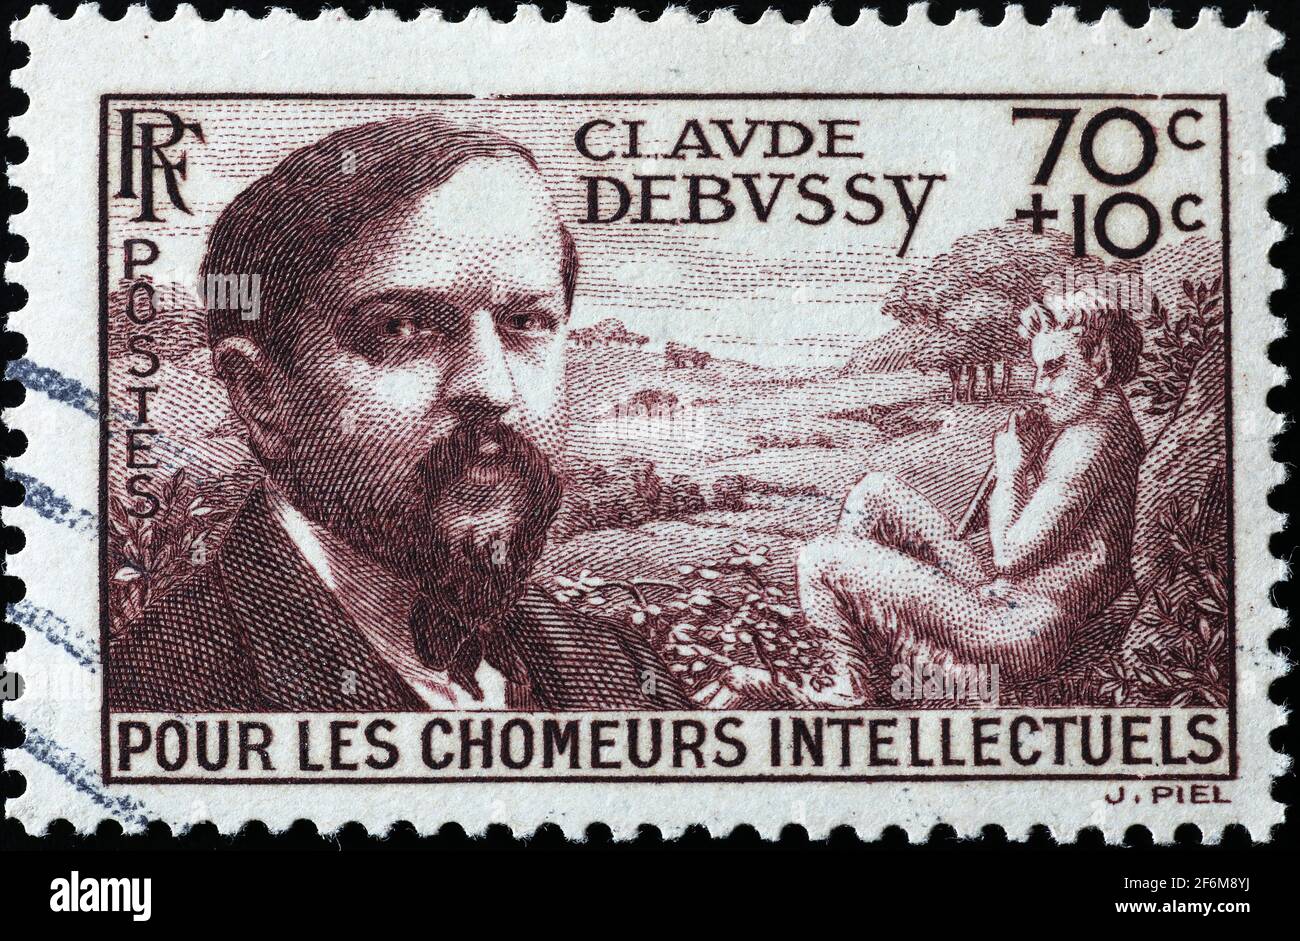 Claude Debussy sur le timbre-poste français Photo Stock - Alamy